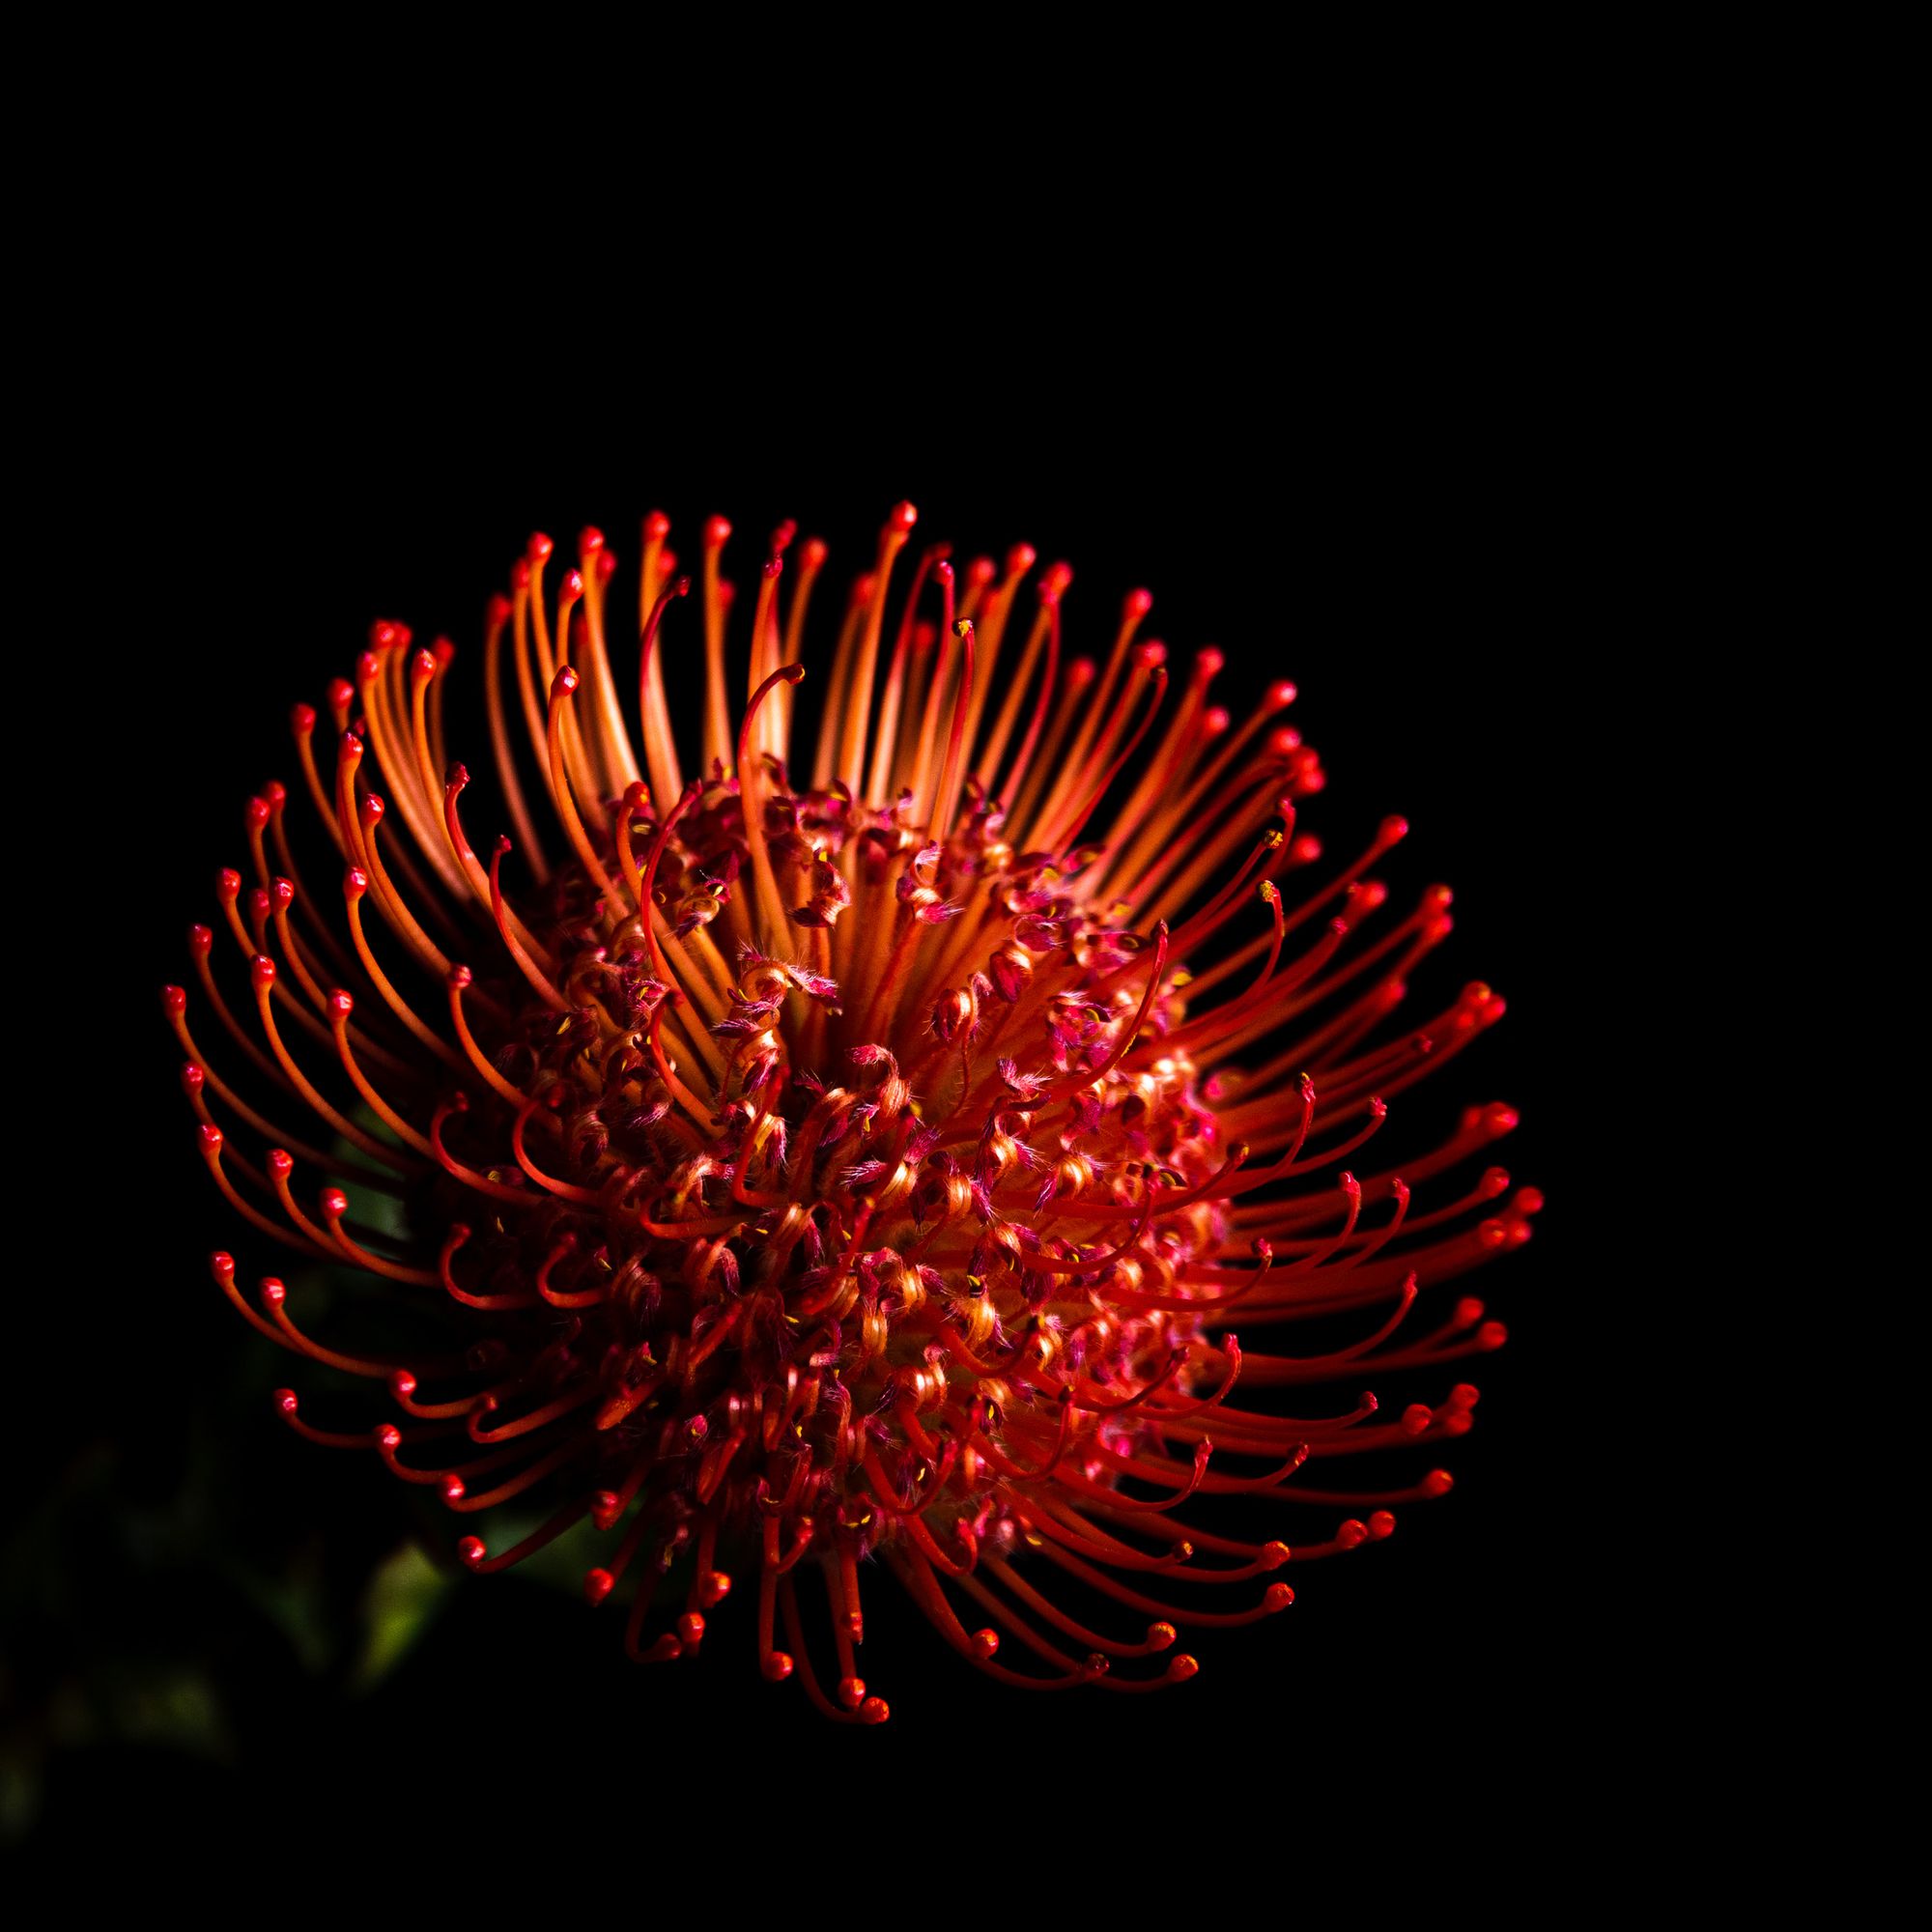 Red Waratah flower, against a stark black background